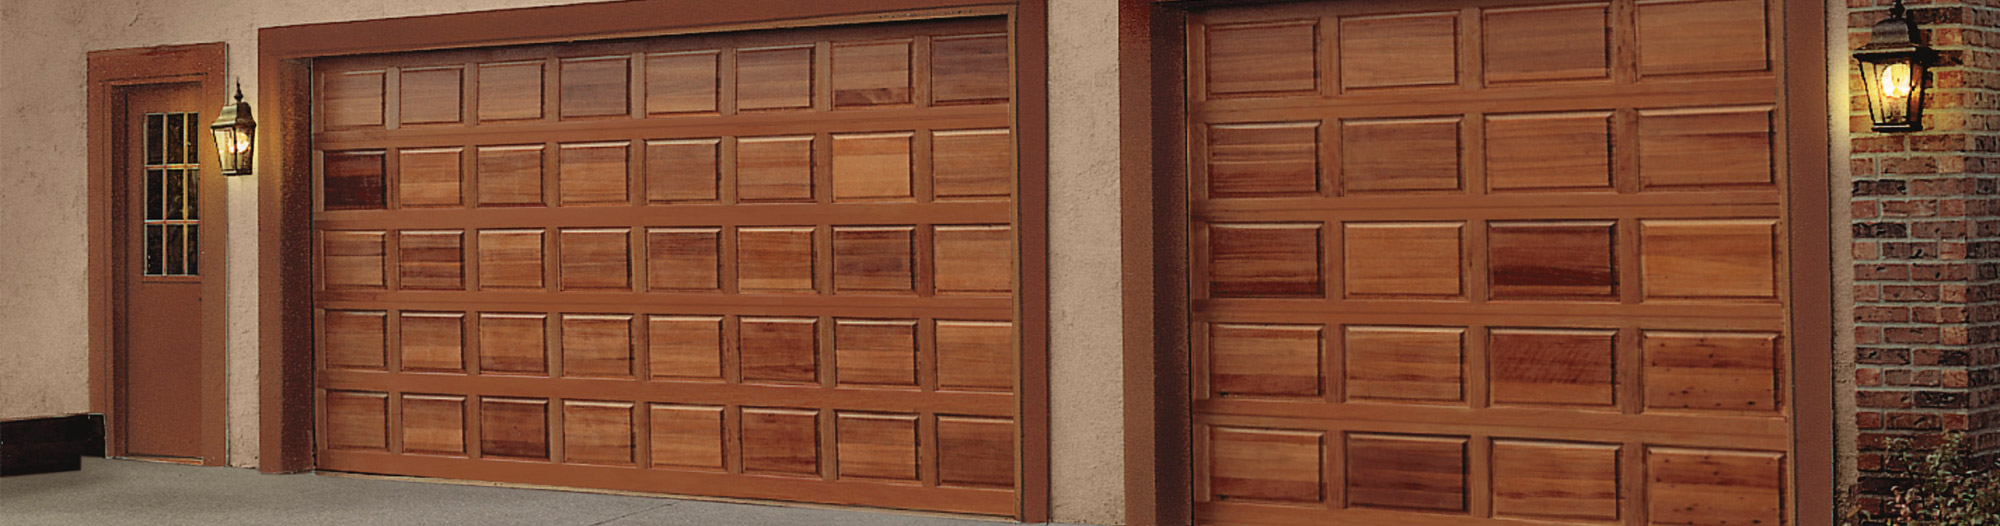 wood style replacement garage door